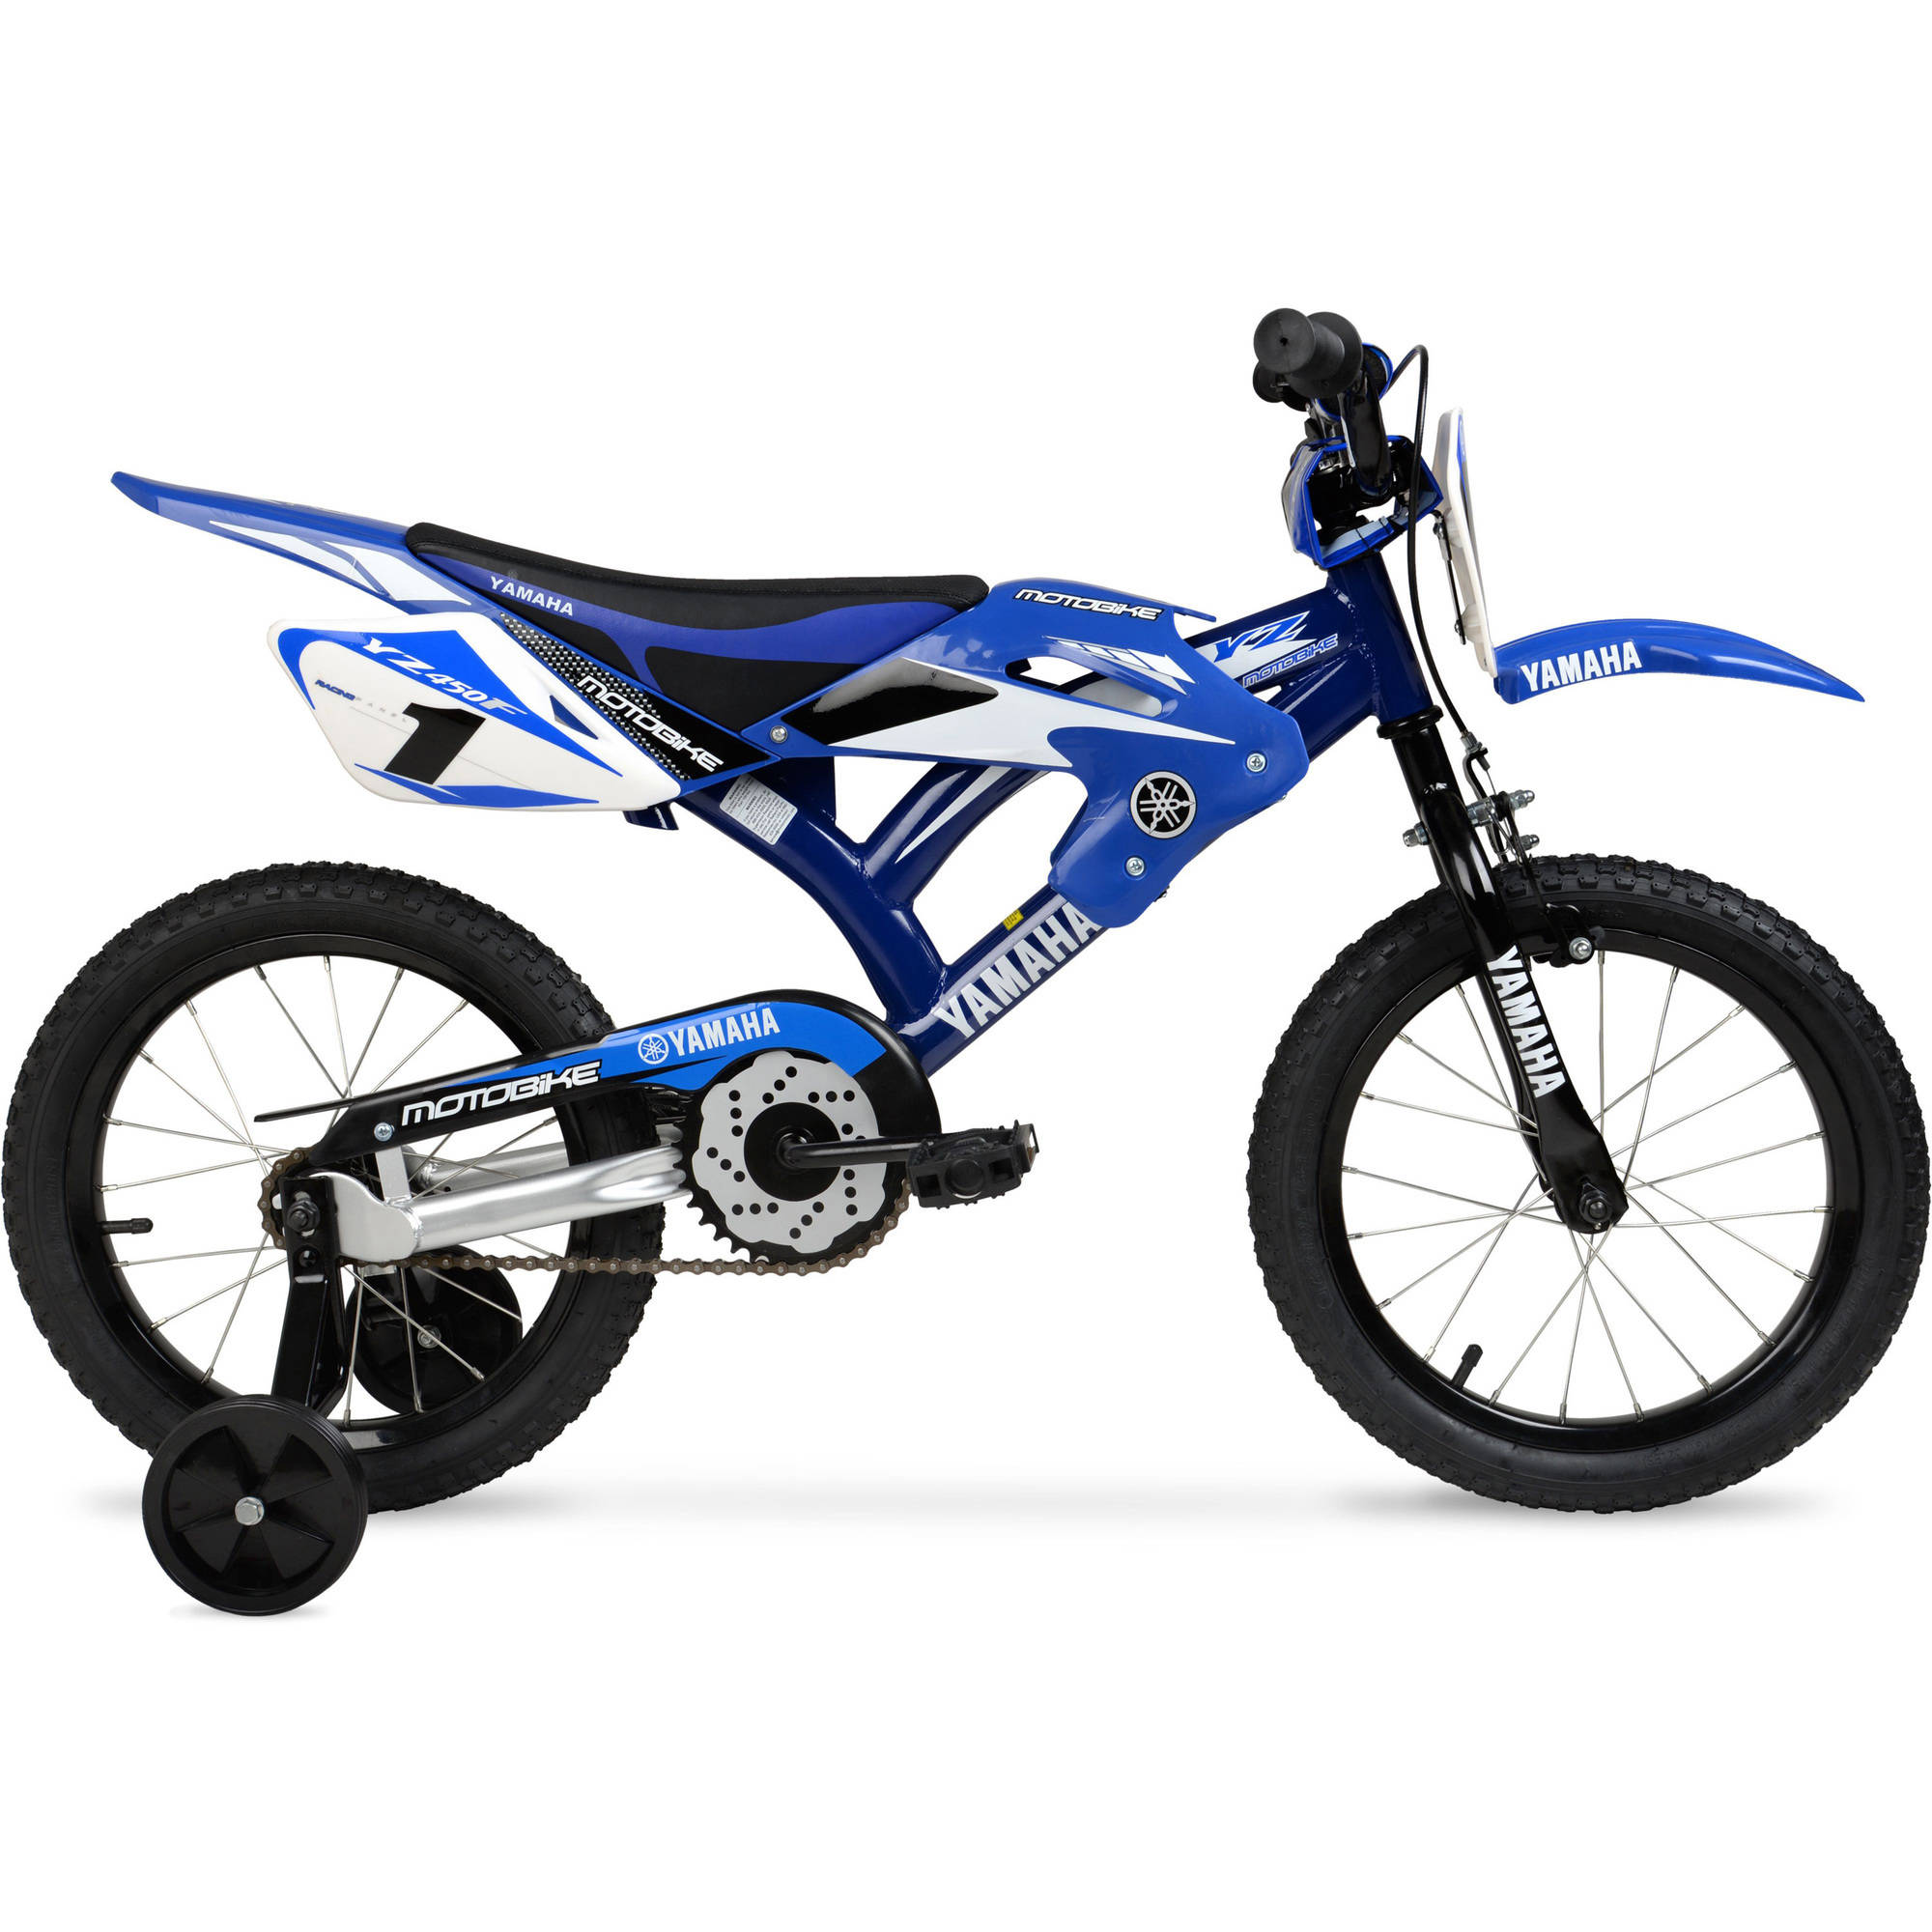 Yamaha 16" Moto BMX Boys Bike, Blue - image 1 of 6